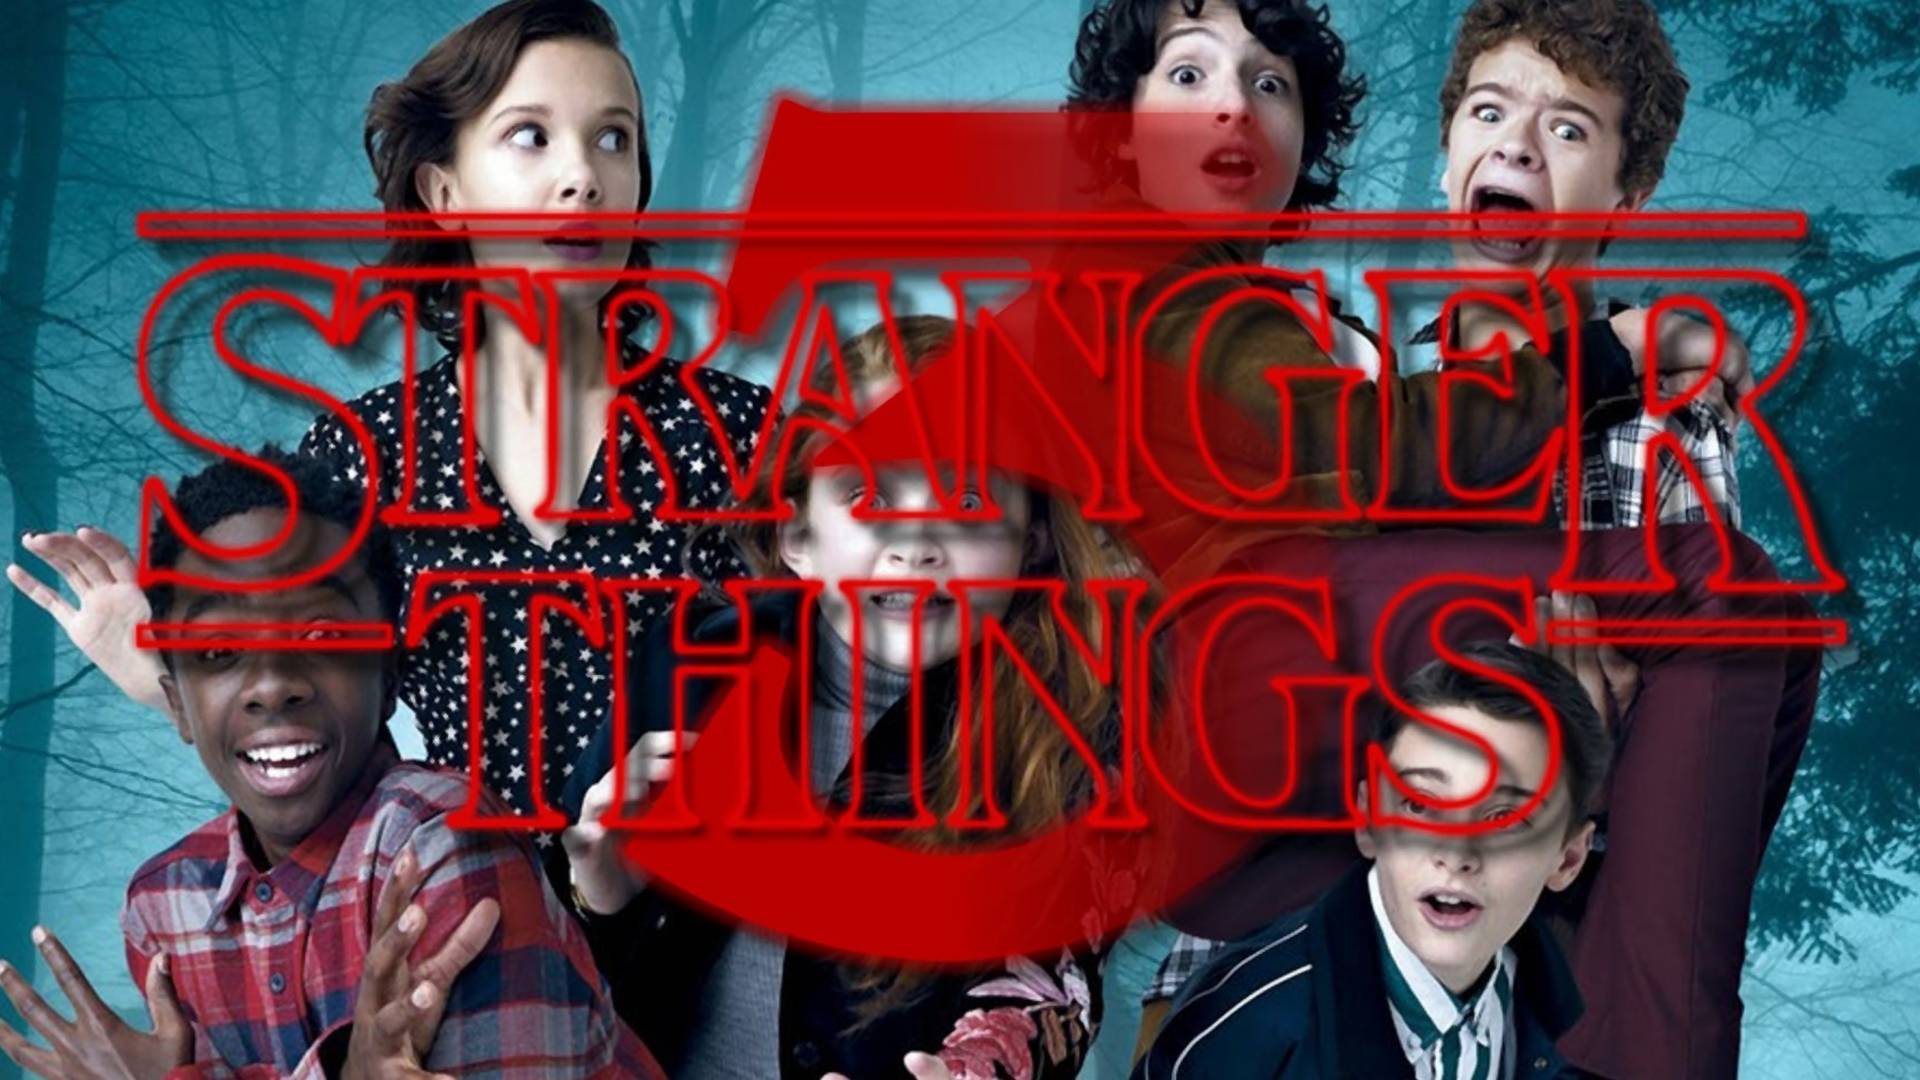 Itt a Stranger Things 3. évadának első teasere – A megjelenés dátumát is felfedik benne!